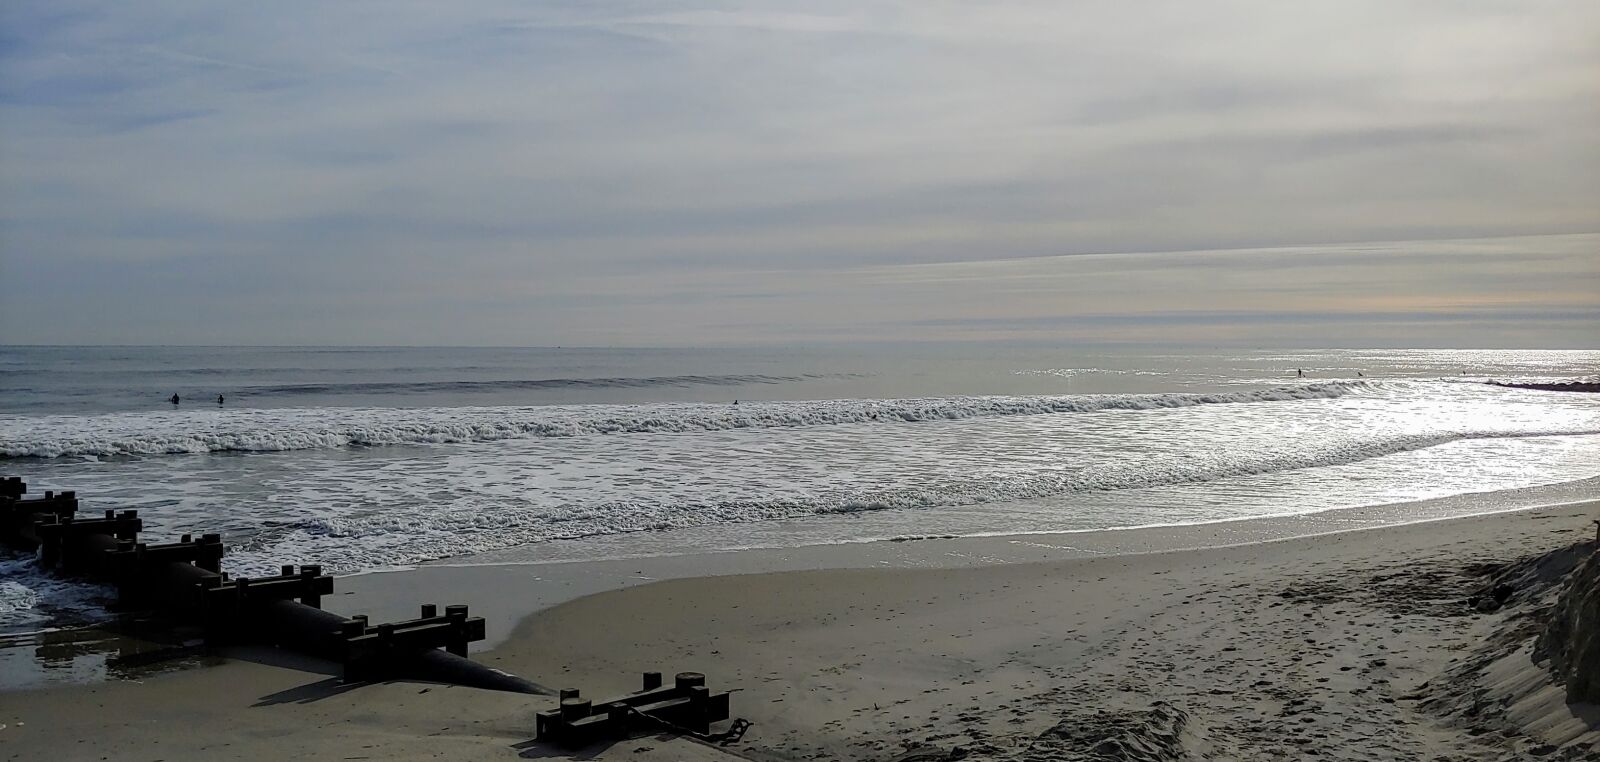 LG G7 THINQ sample photo. Ocean, sand, beach photography